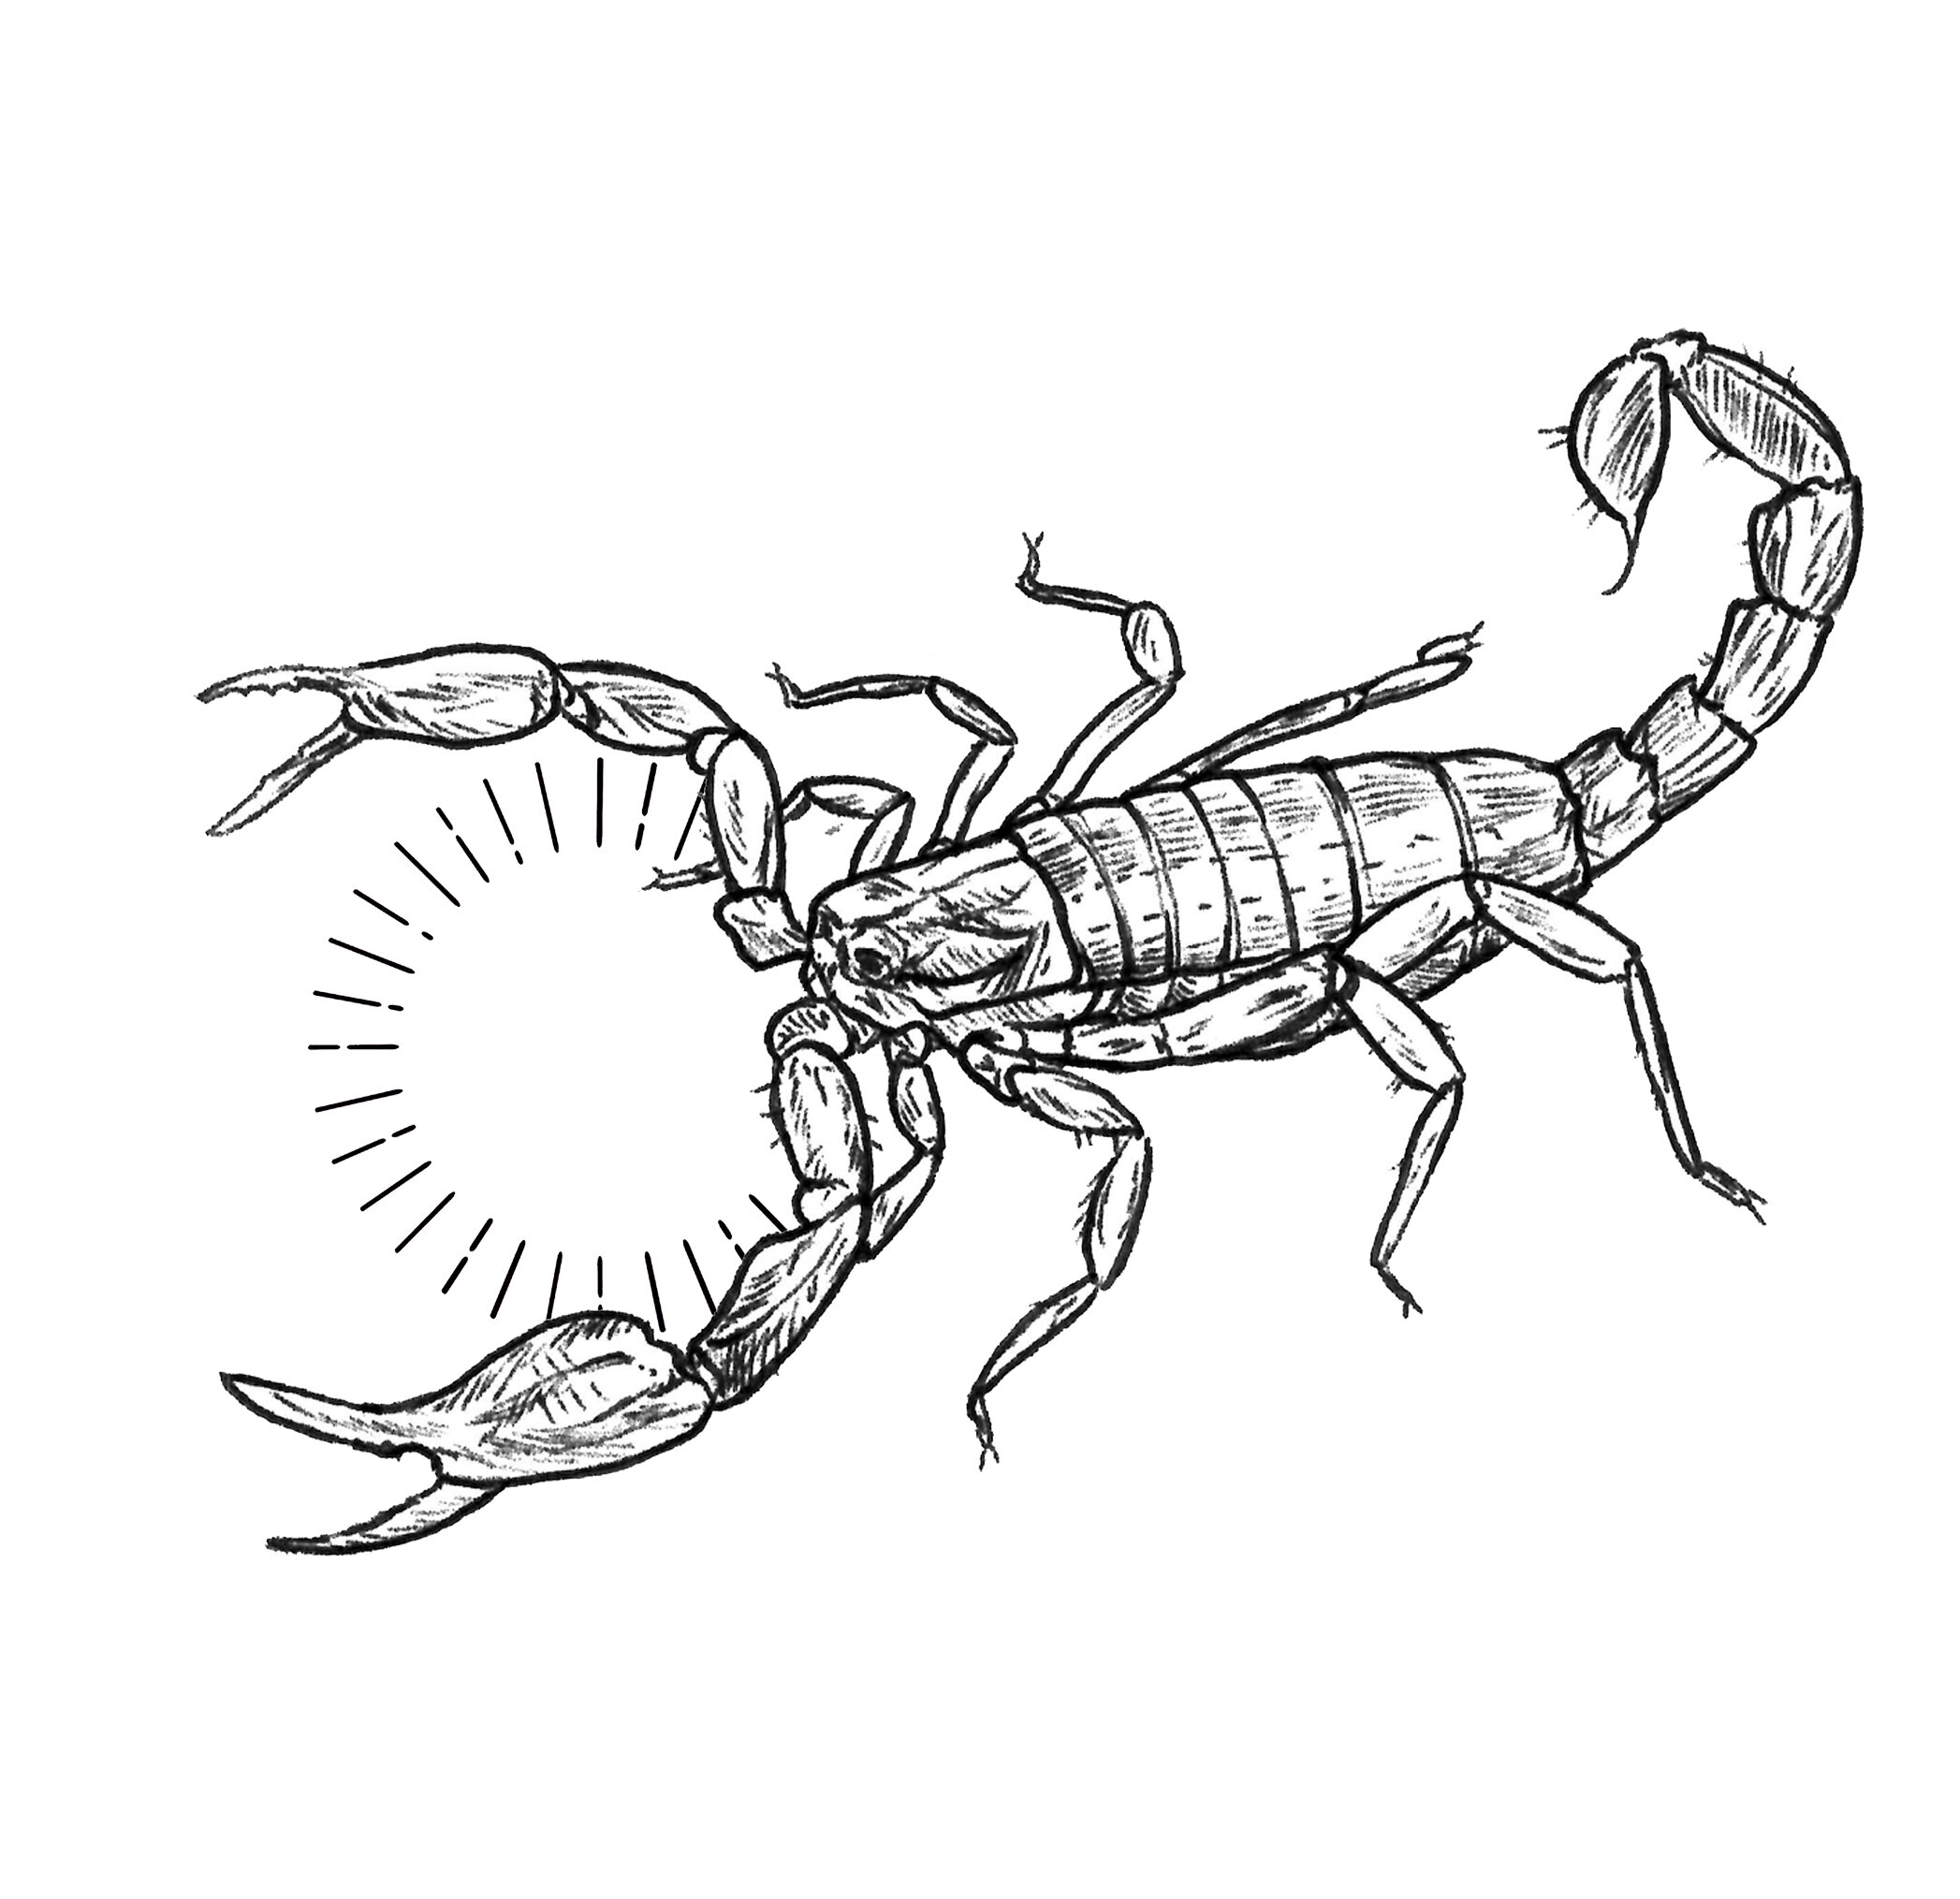 scorpion pseudouroctonus reddelli 2.jpg